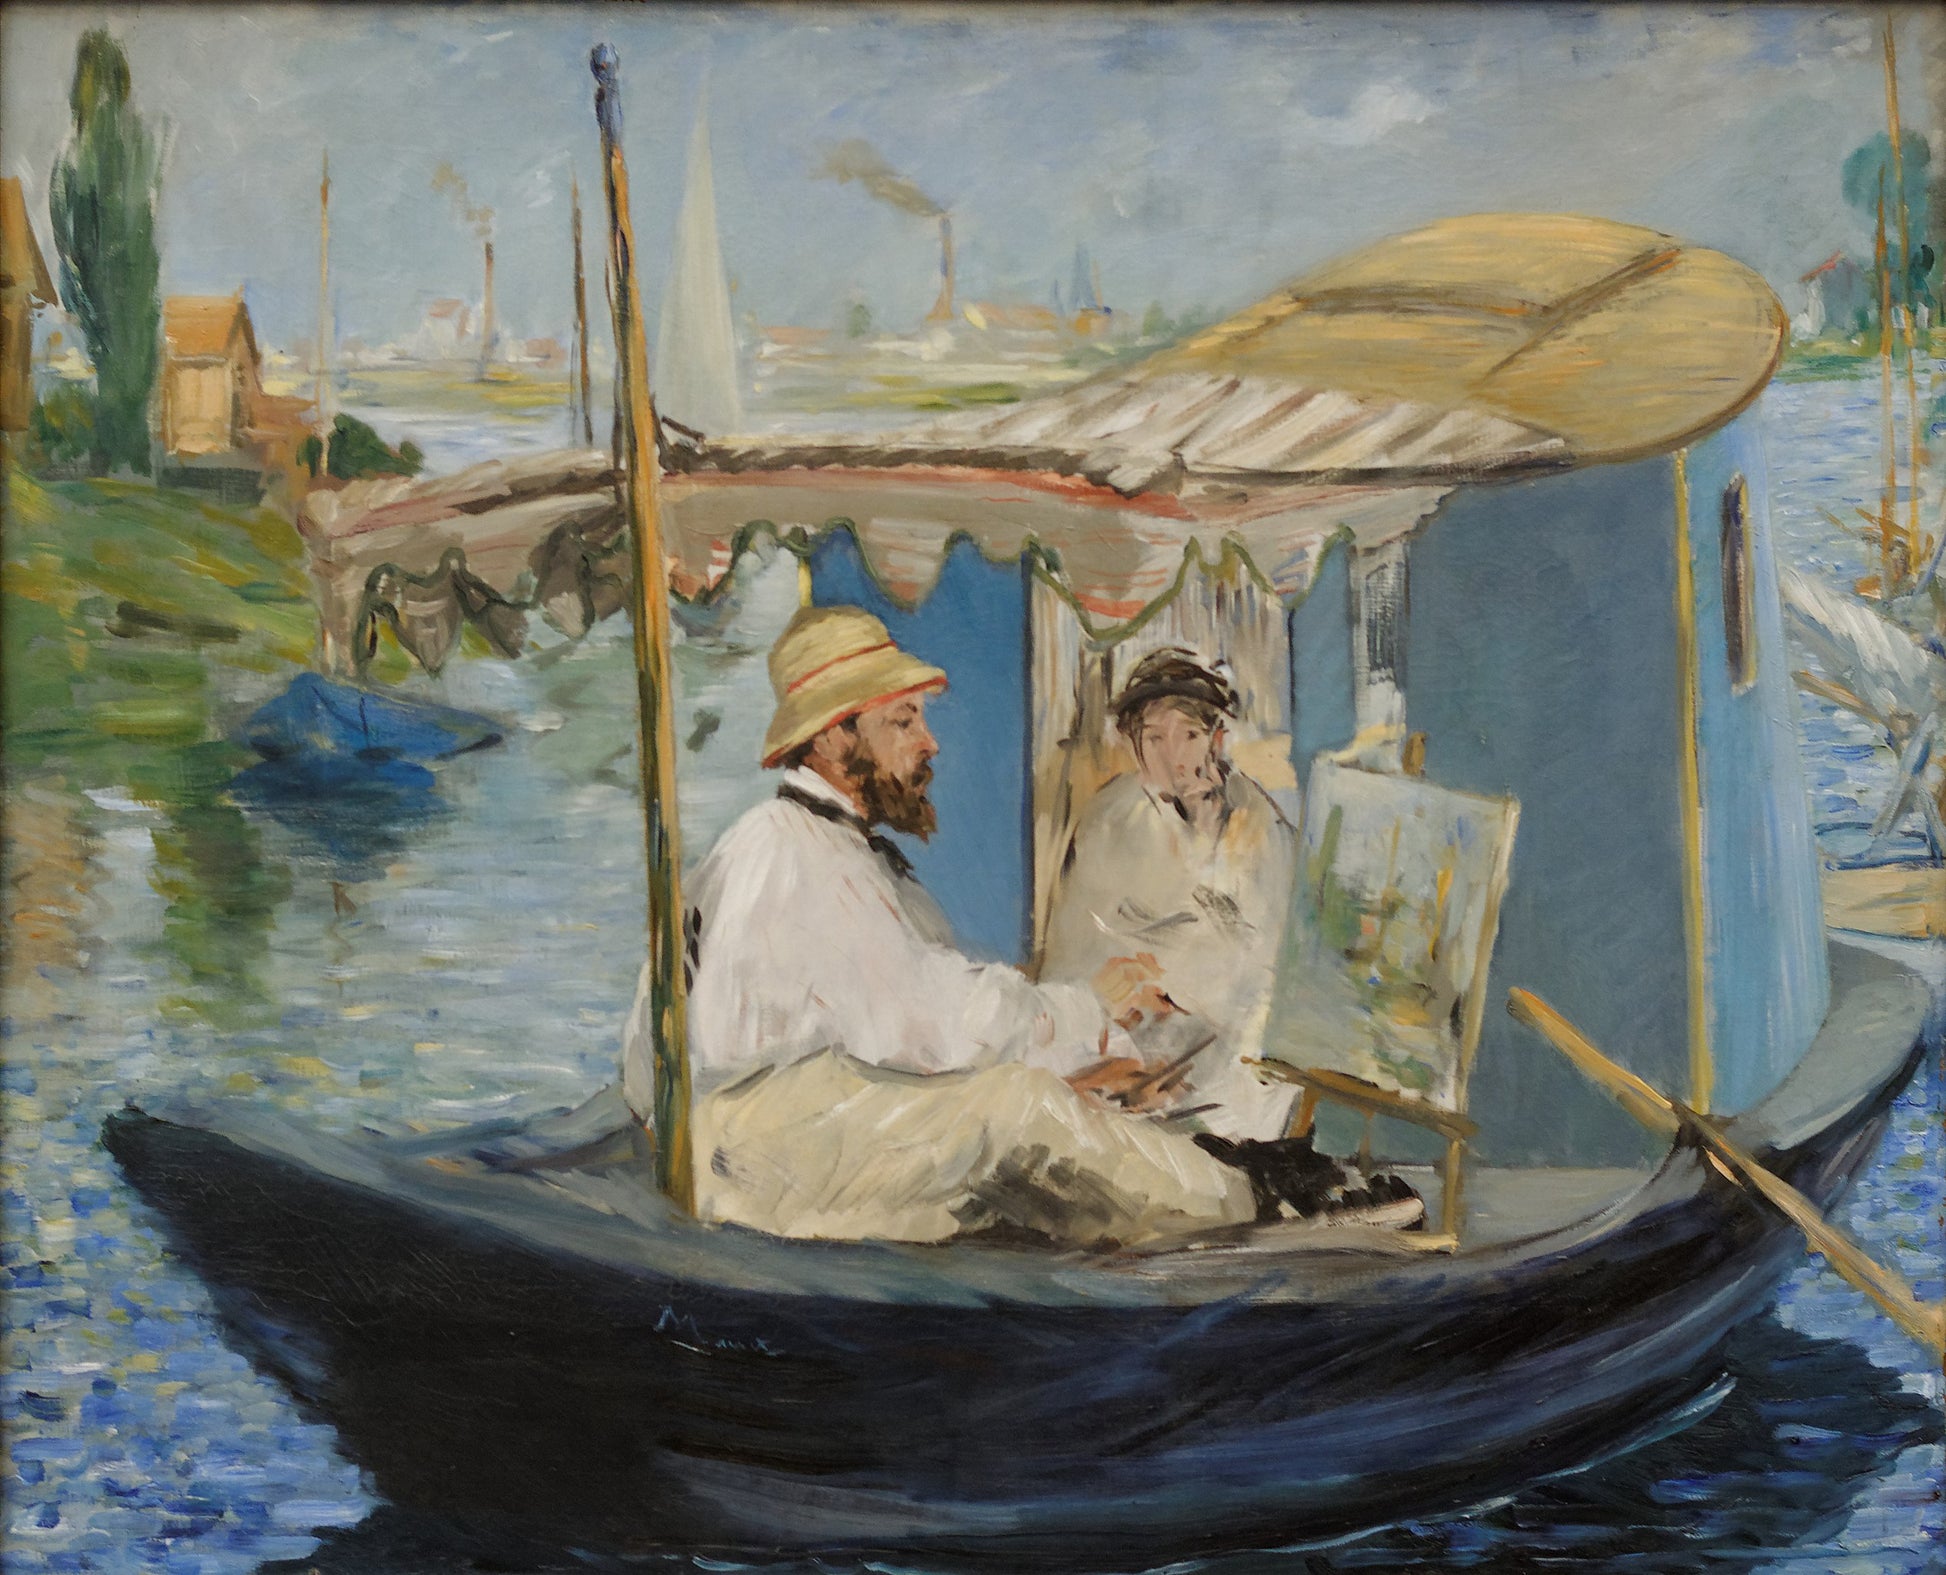 Claude Monet peignant dans son atelier - Edouard Manet